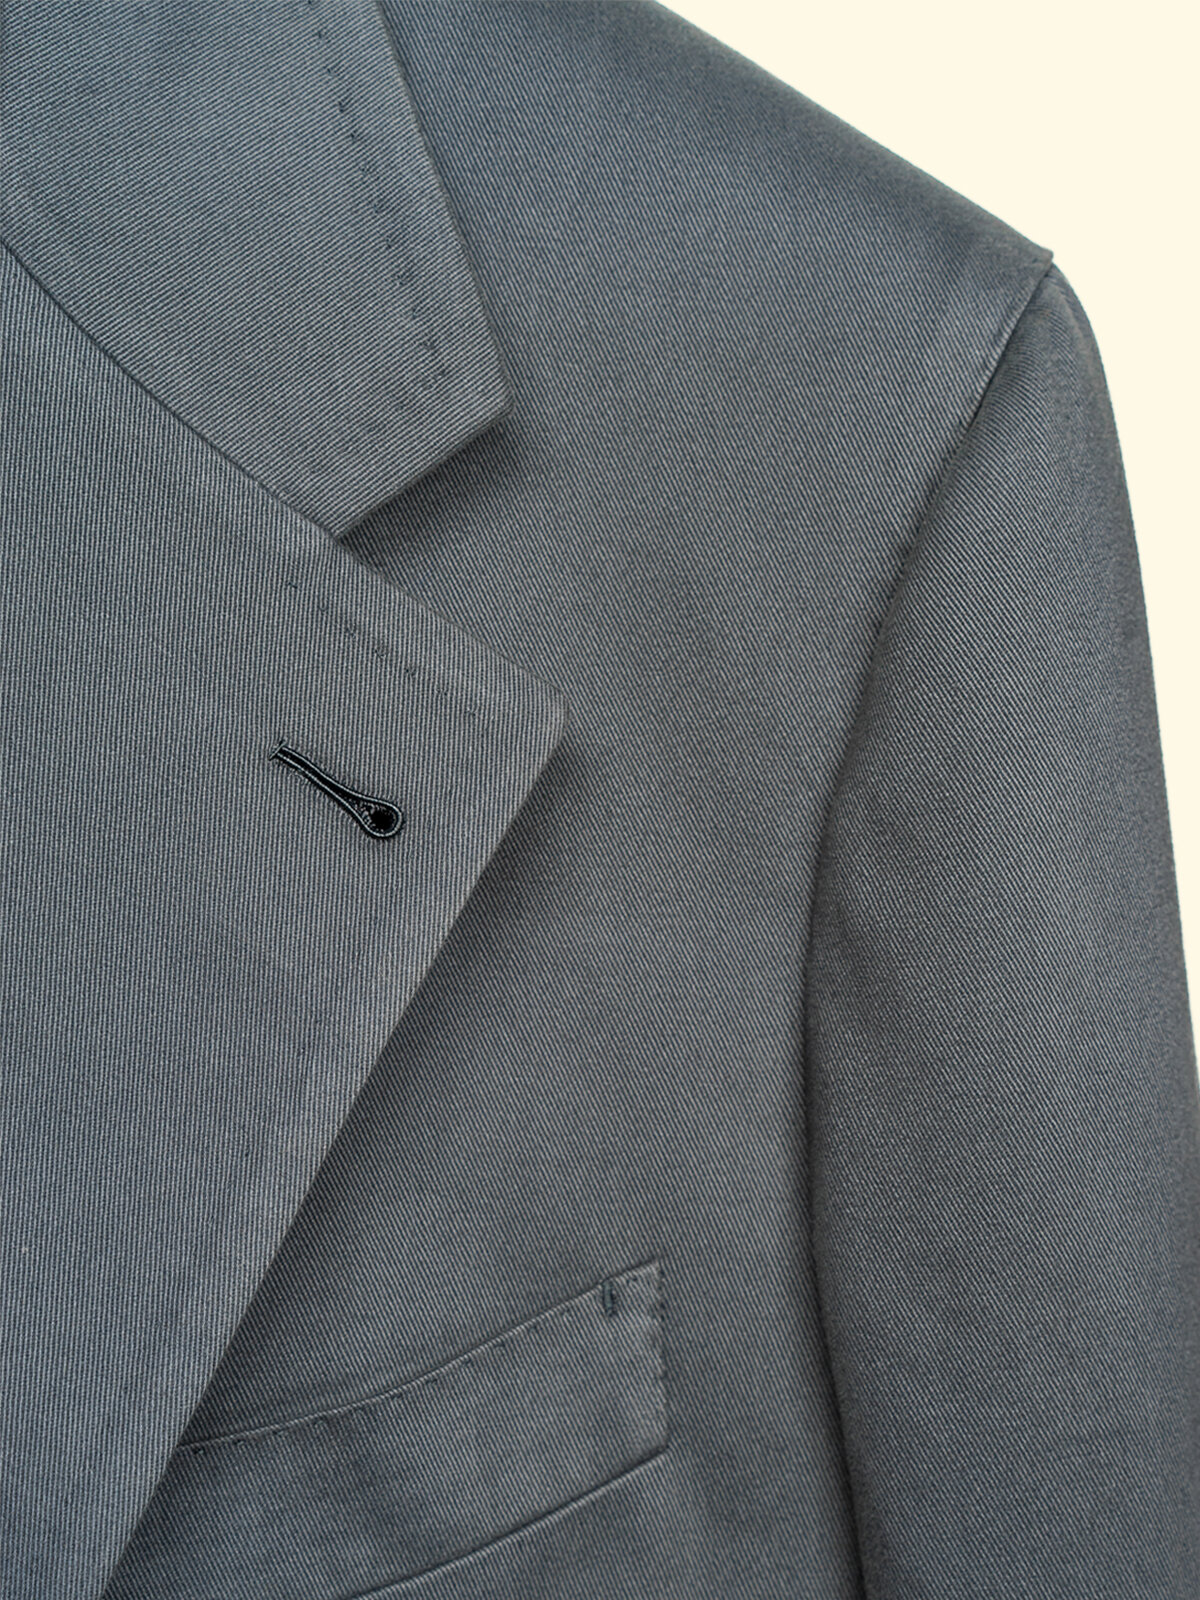 Brushed Cotton Suit Jacket - Dolphin Grey — The Anthology